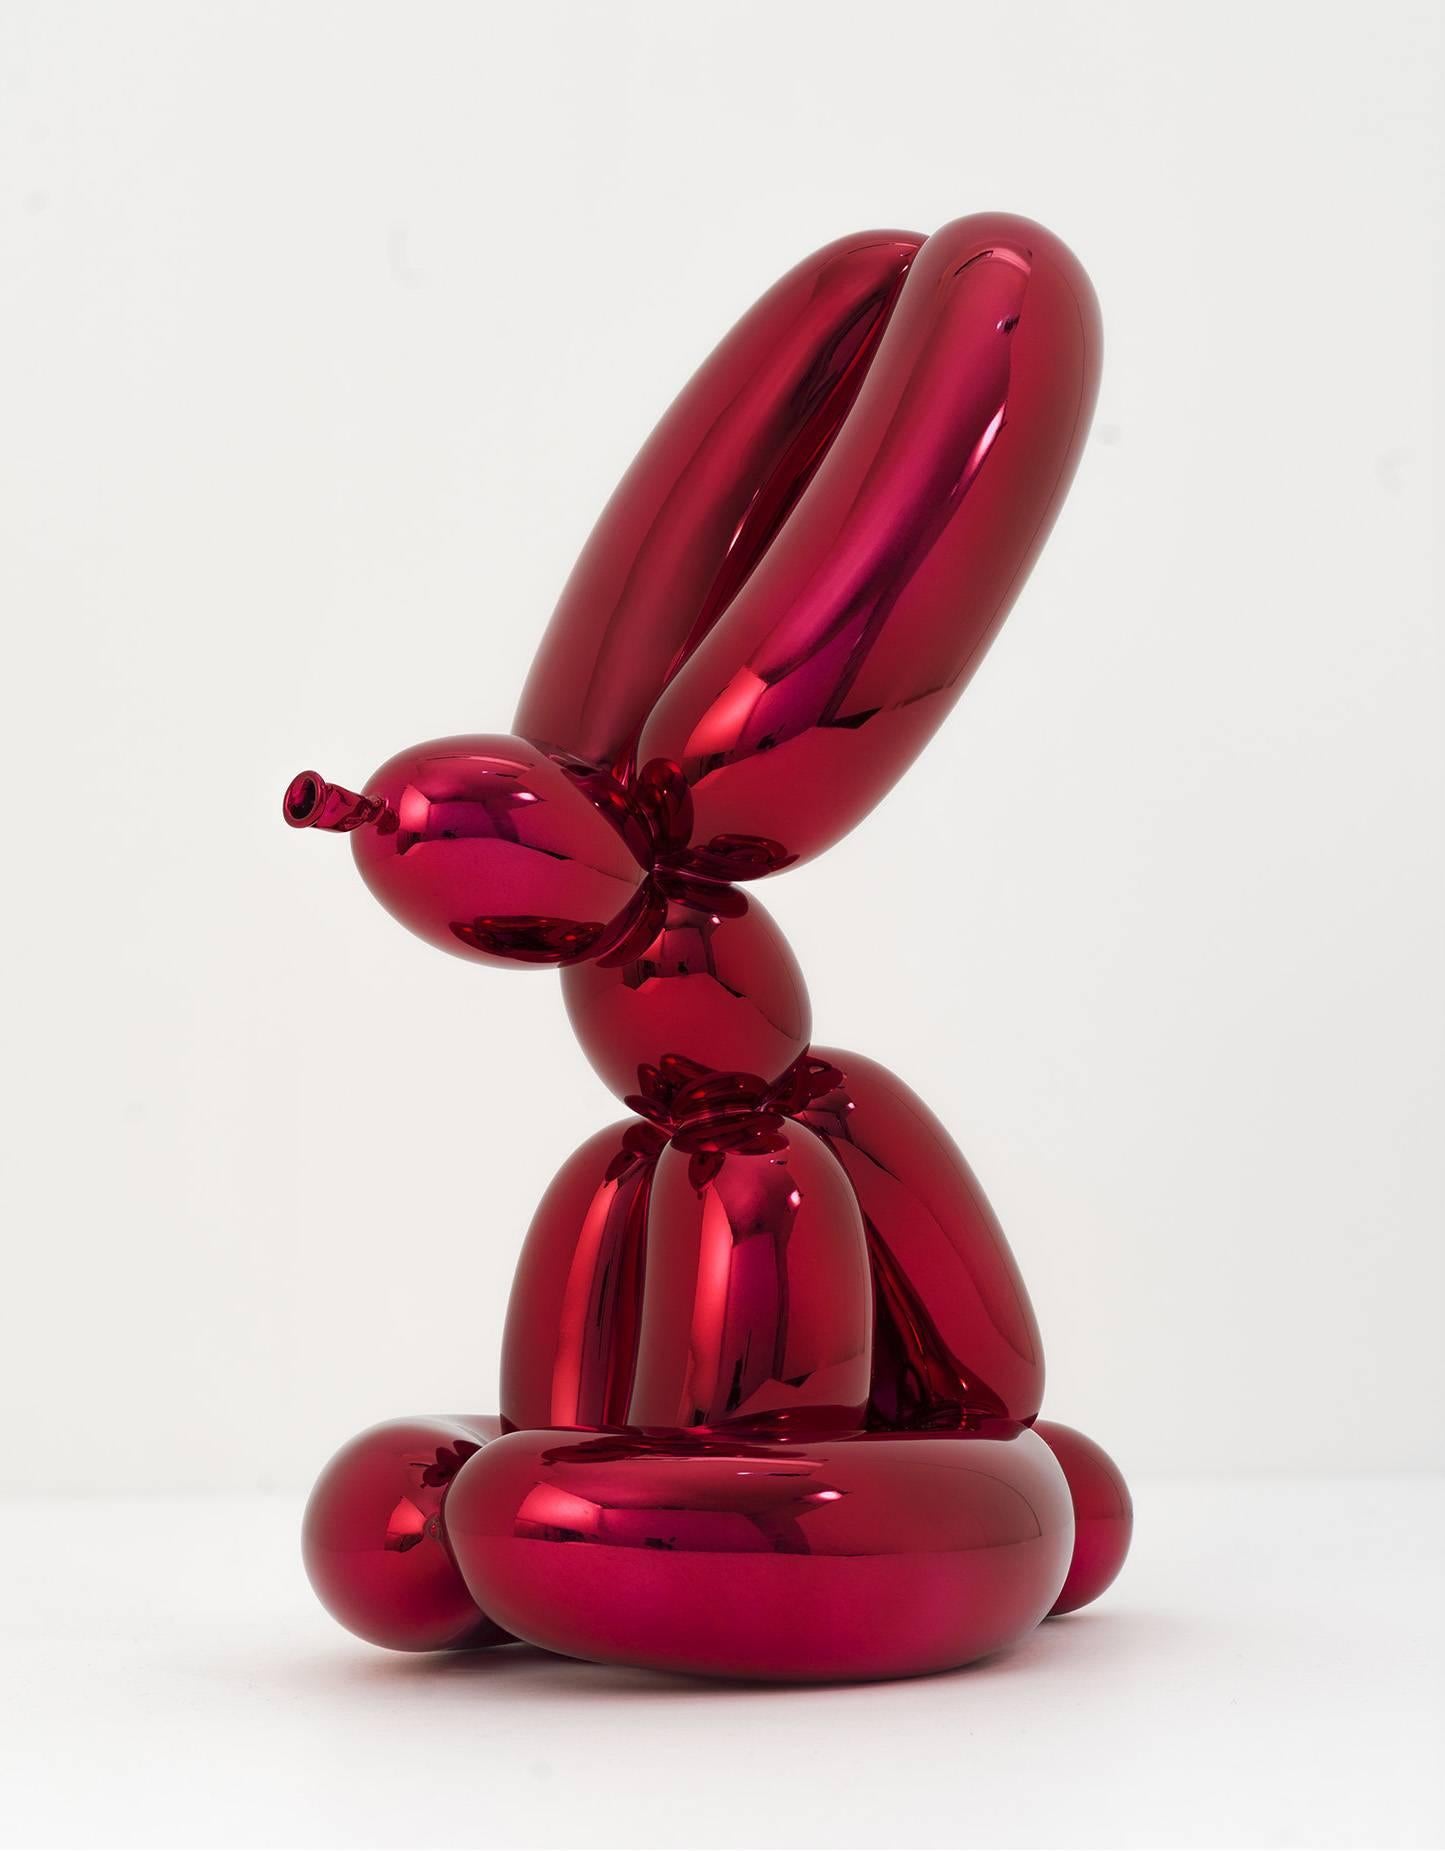 Jeff Koons Figurative Sculpture - Balloon Rabbit (red)